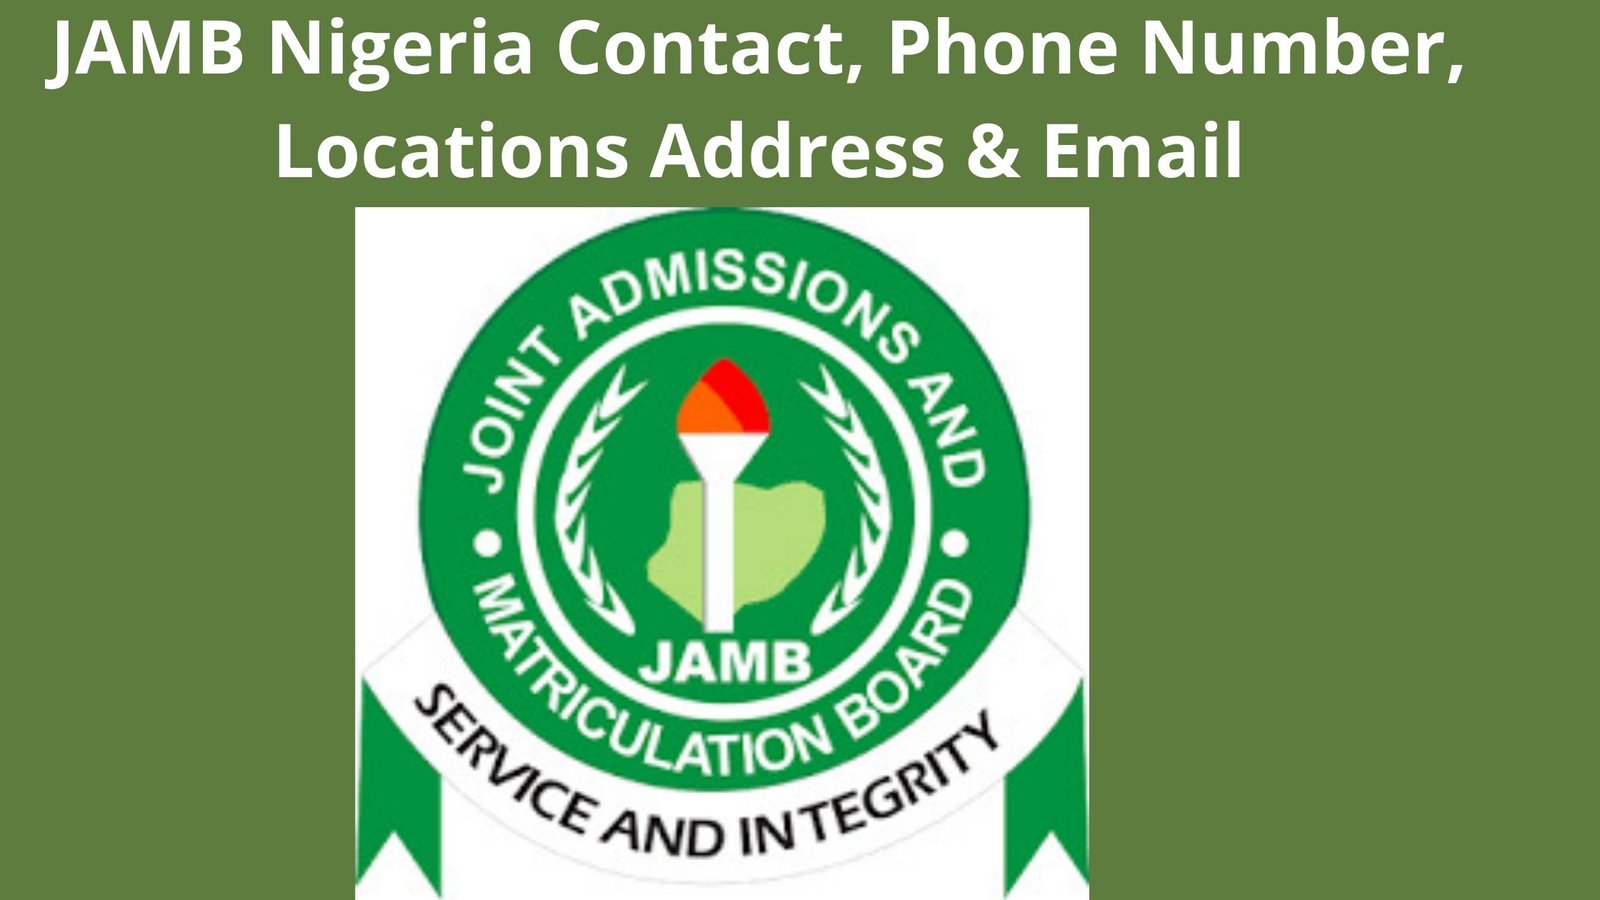 JAMB Nigeria Contact